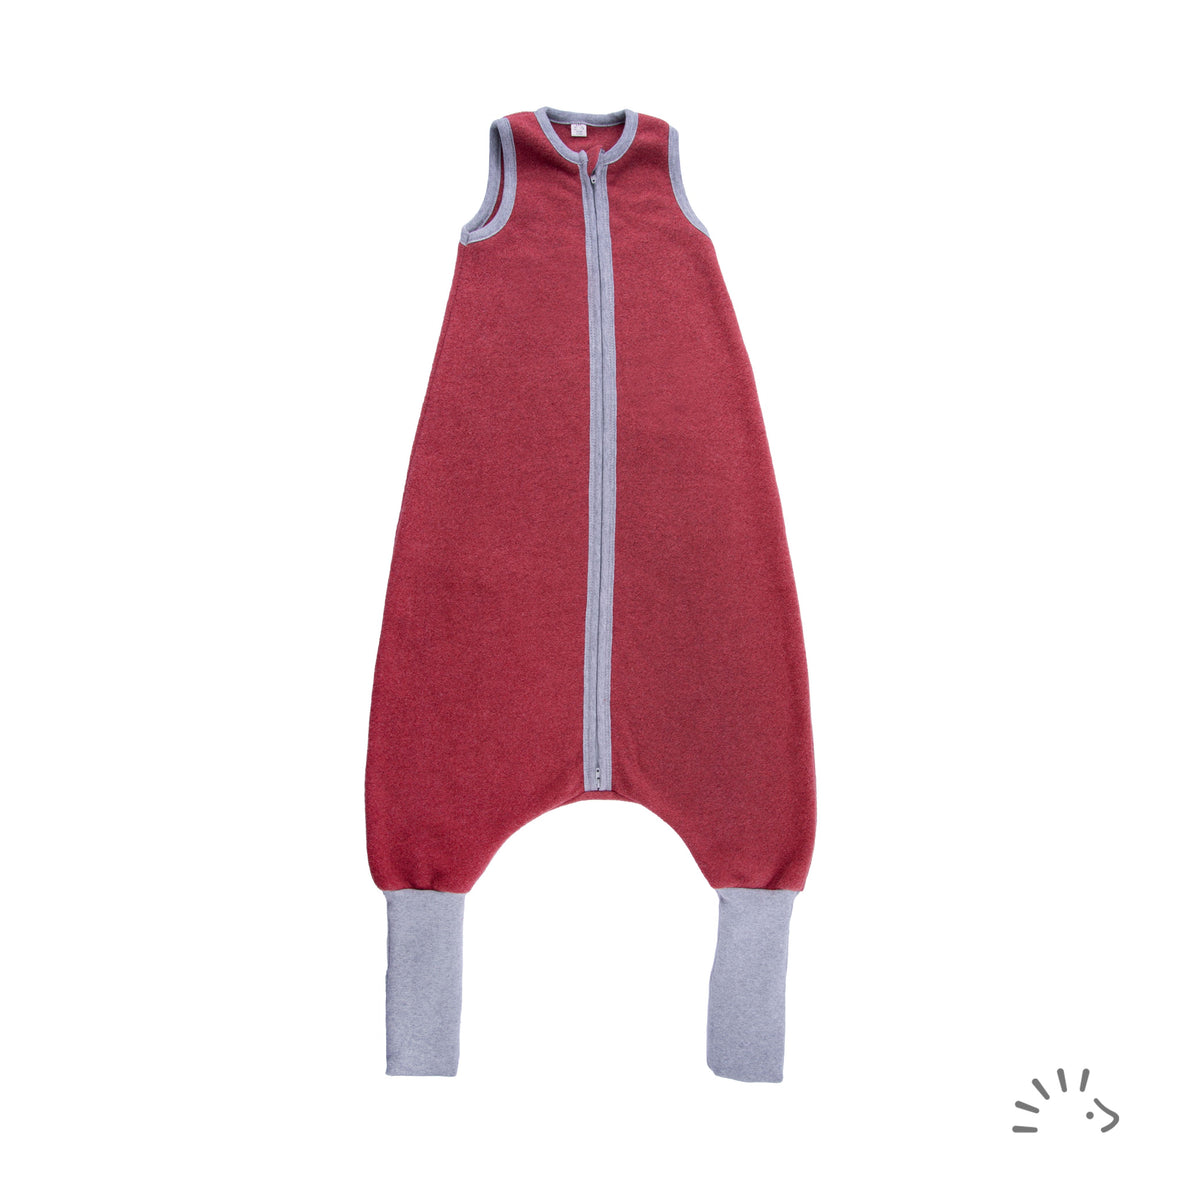 Der Schlafsack mit Beinen aus GOTS zertifiziertem Baumwollfleece ist bequem, praktisch und sogar mitwachsend – ein echter Allrounder! rotbraun